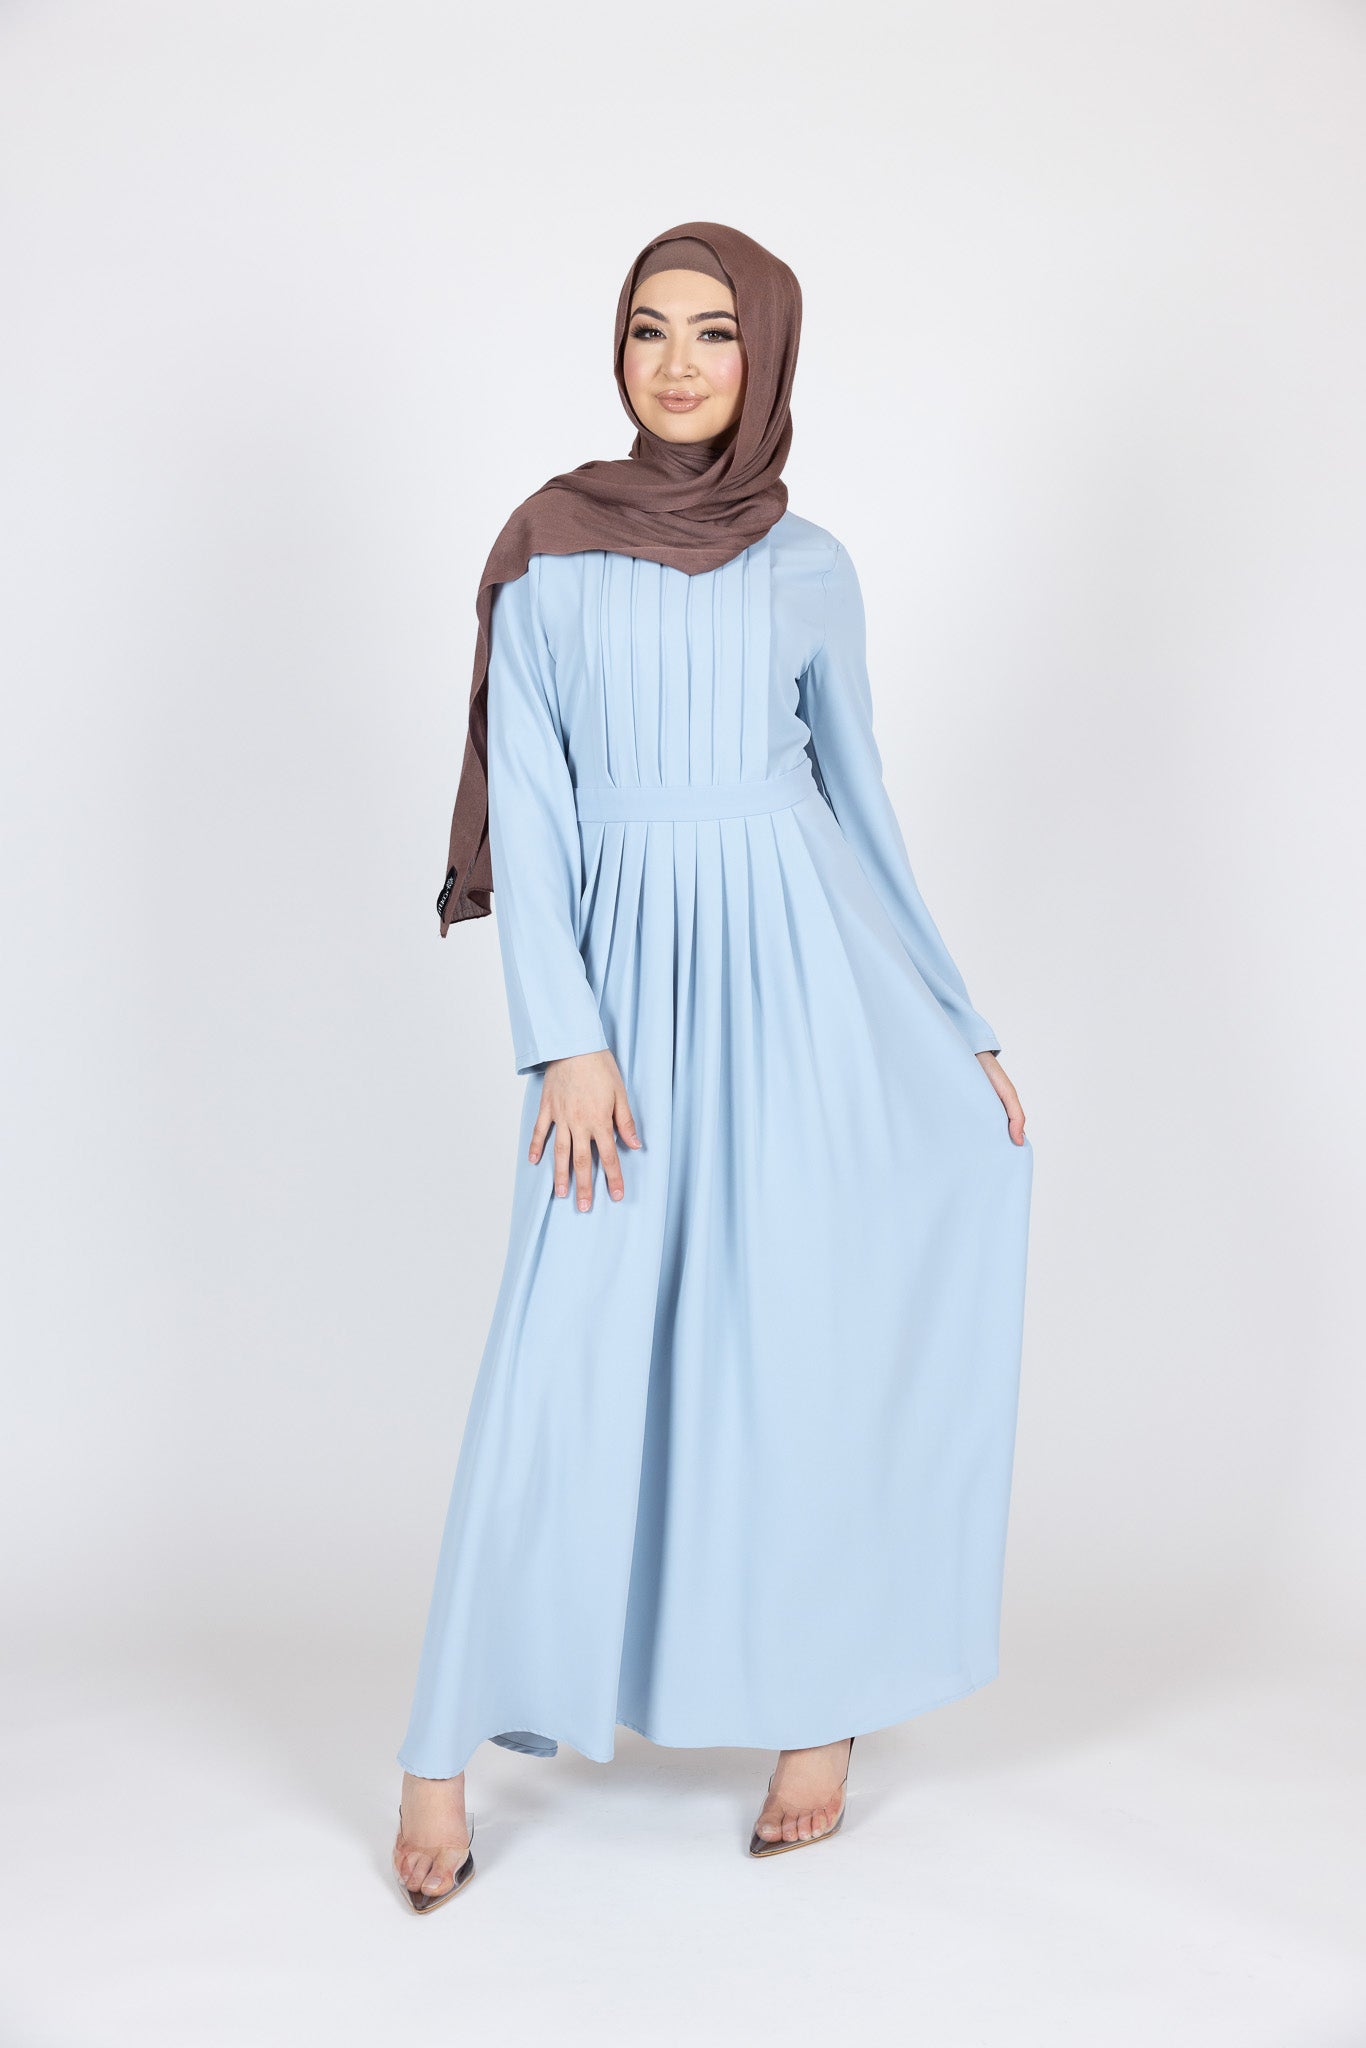 M8024ABabyblue-dress-abaya